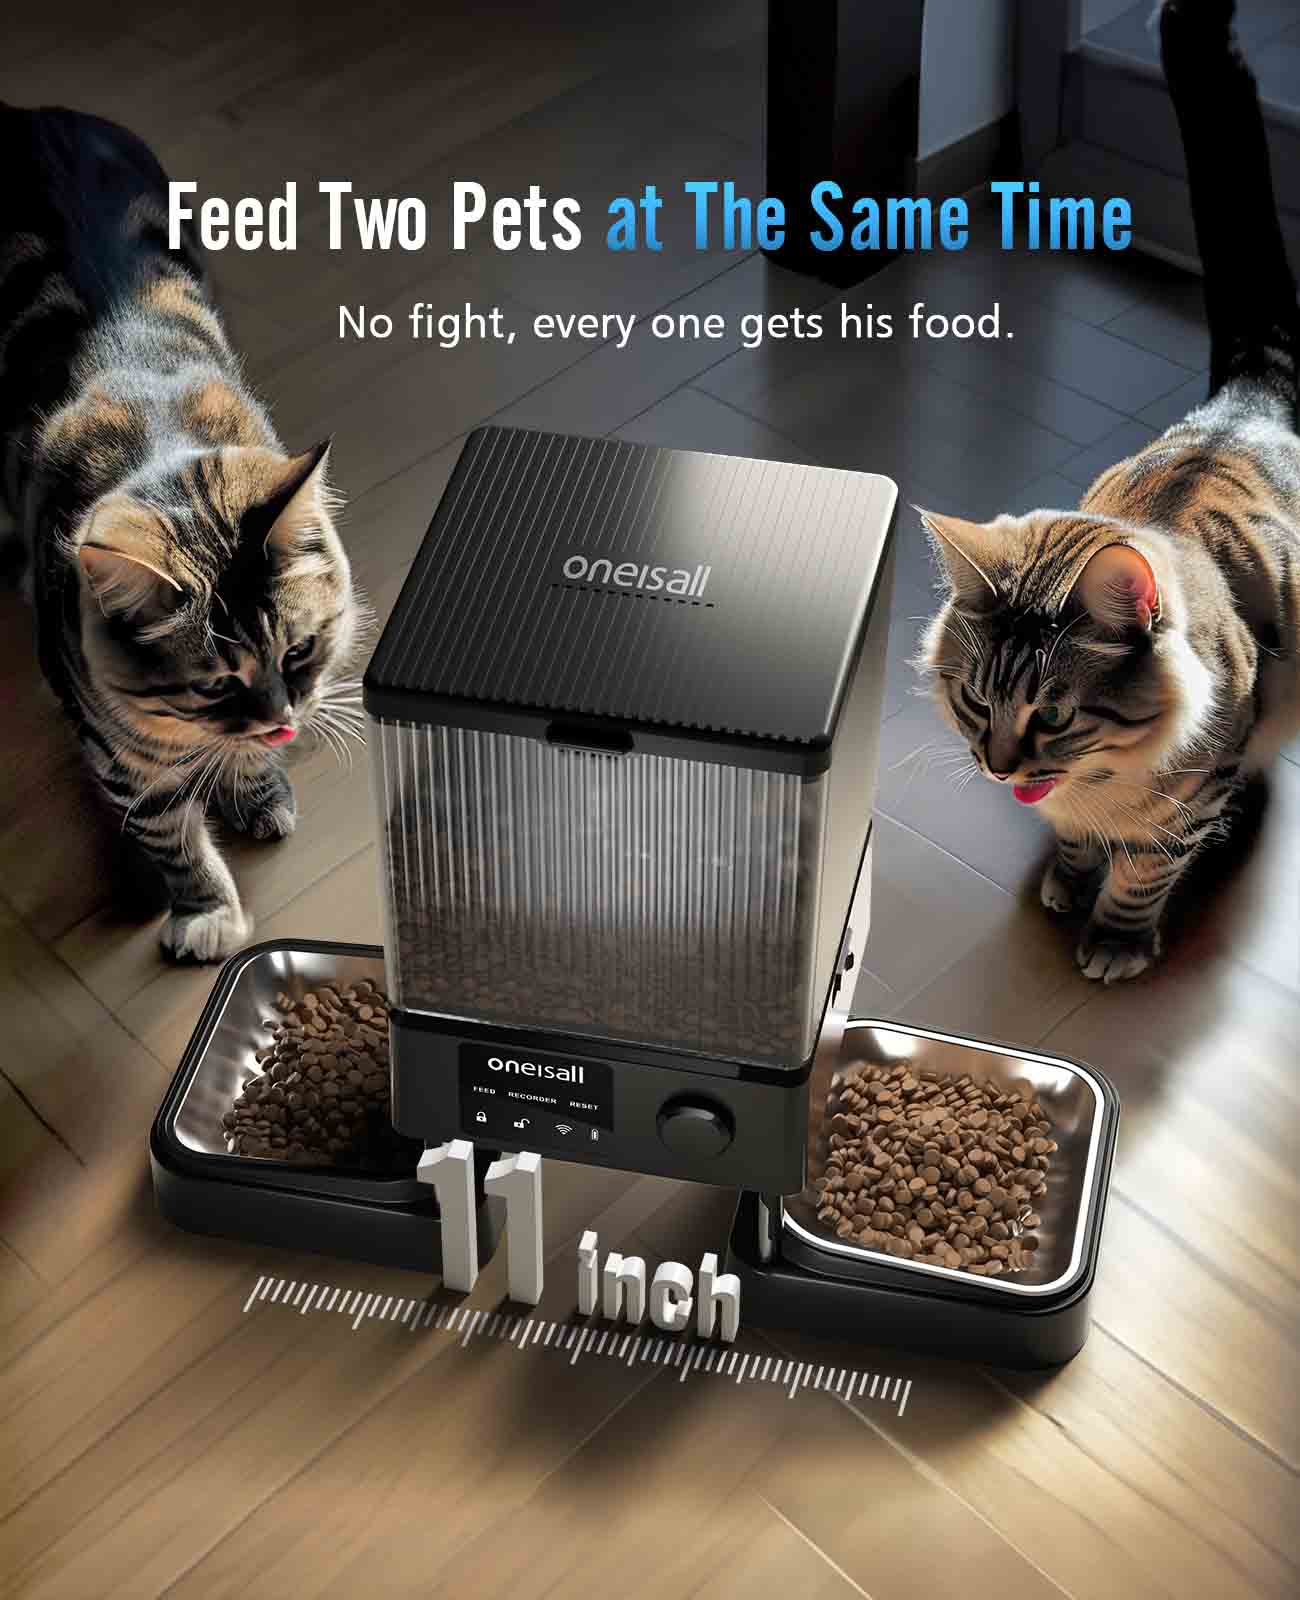 5G Wi-Fi가 있는 Oneisall 자동 고양이 사료 디스펜서, 고양이 2마리를 위한 자동 고양이 사료 공급기, APP 제어 기능이 있는 20컵 시간 제한 건조 식품 디스펜서